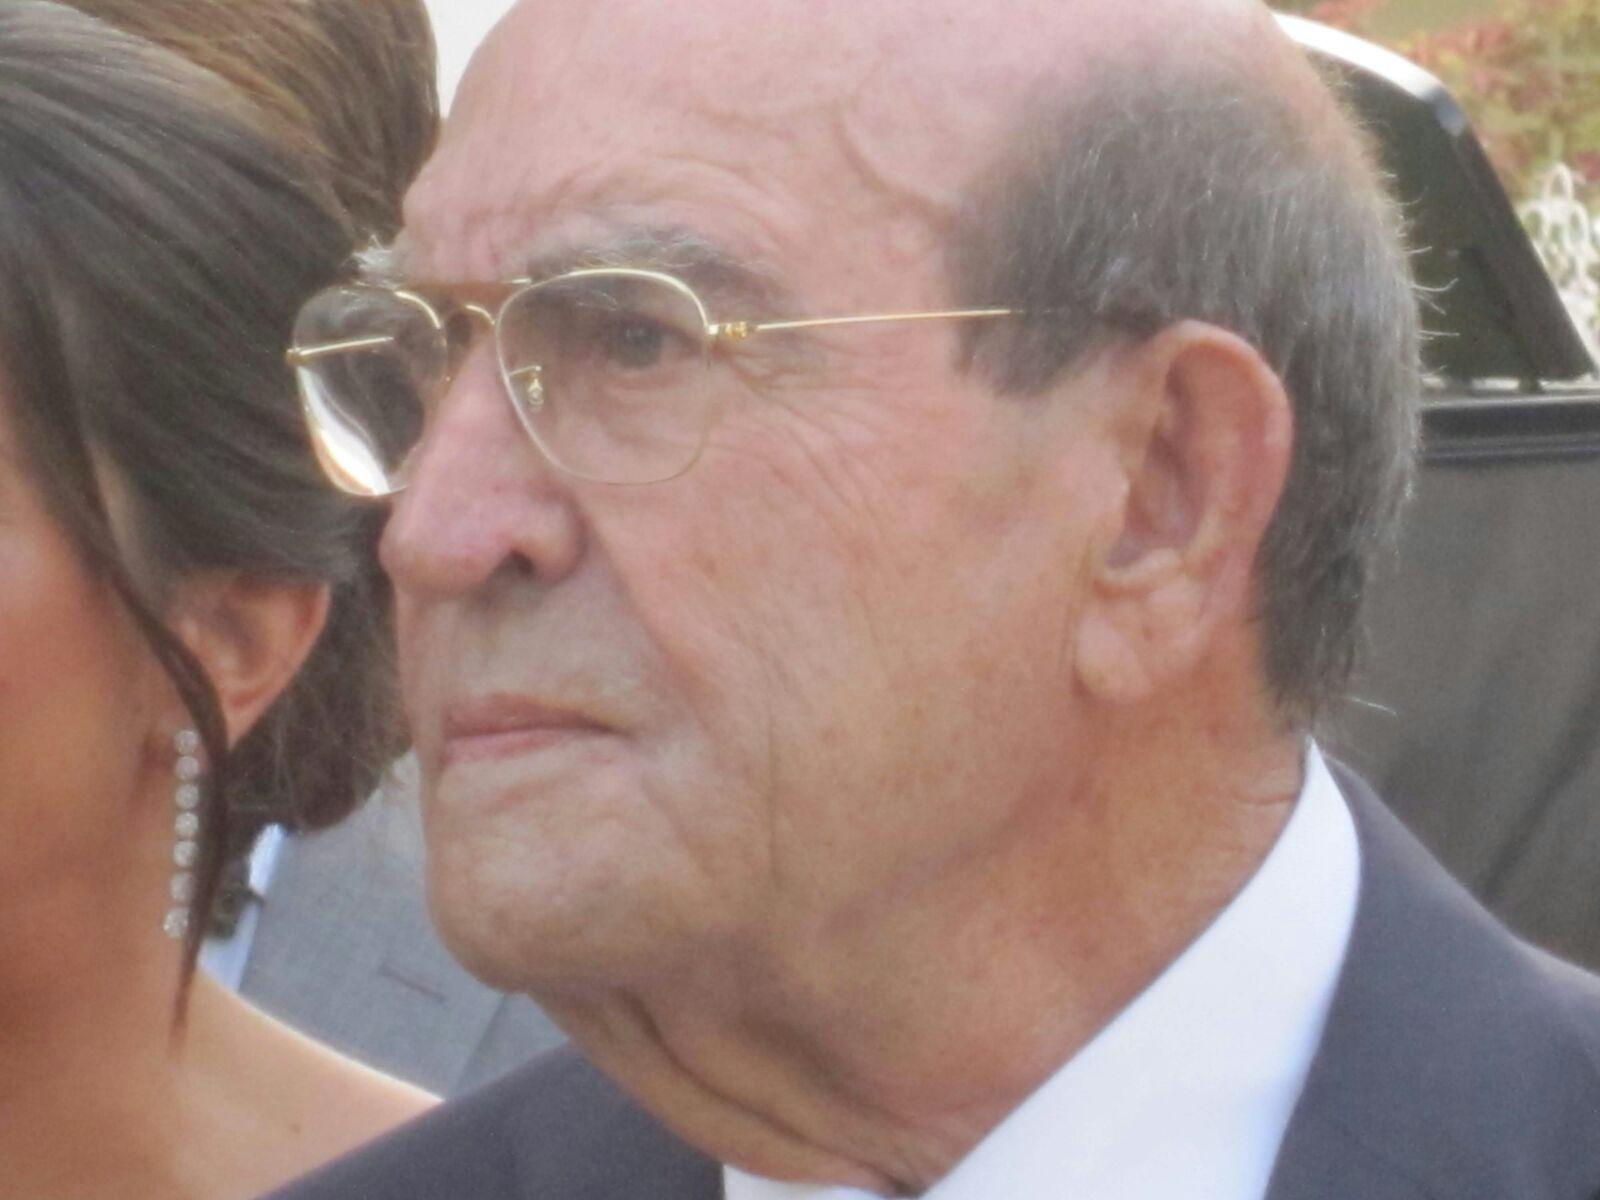 La Asociación Valenciana de Empresas del Calzado (AVECAL) lamenta la pérdida de Pedro Miralles Román